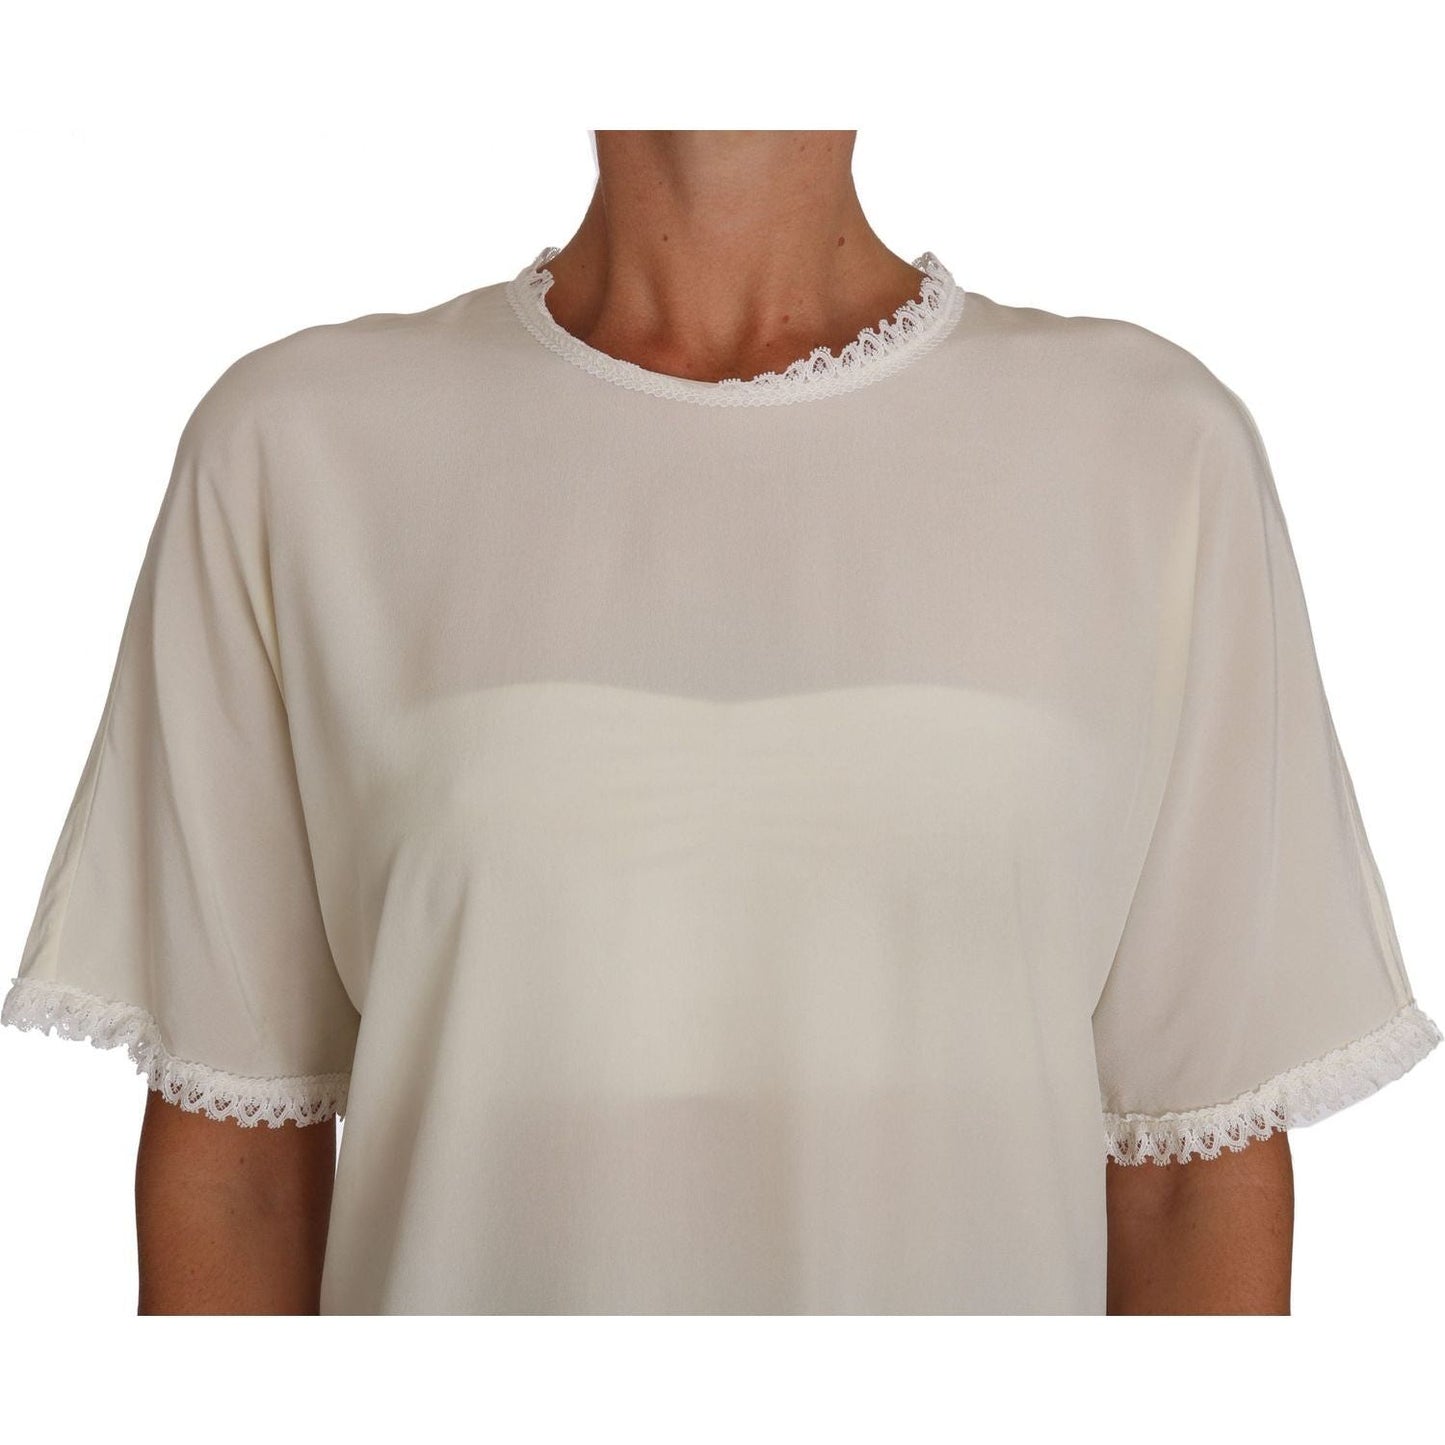 Dolce & Gabbana Cream Silk Lace-Detailed Blouse Top white-cream-silk-lace-top-blouse-t-shirt